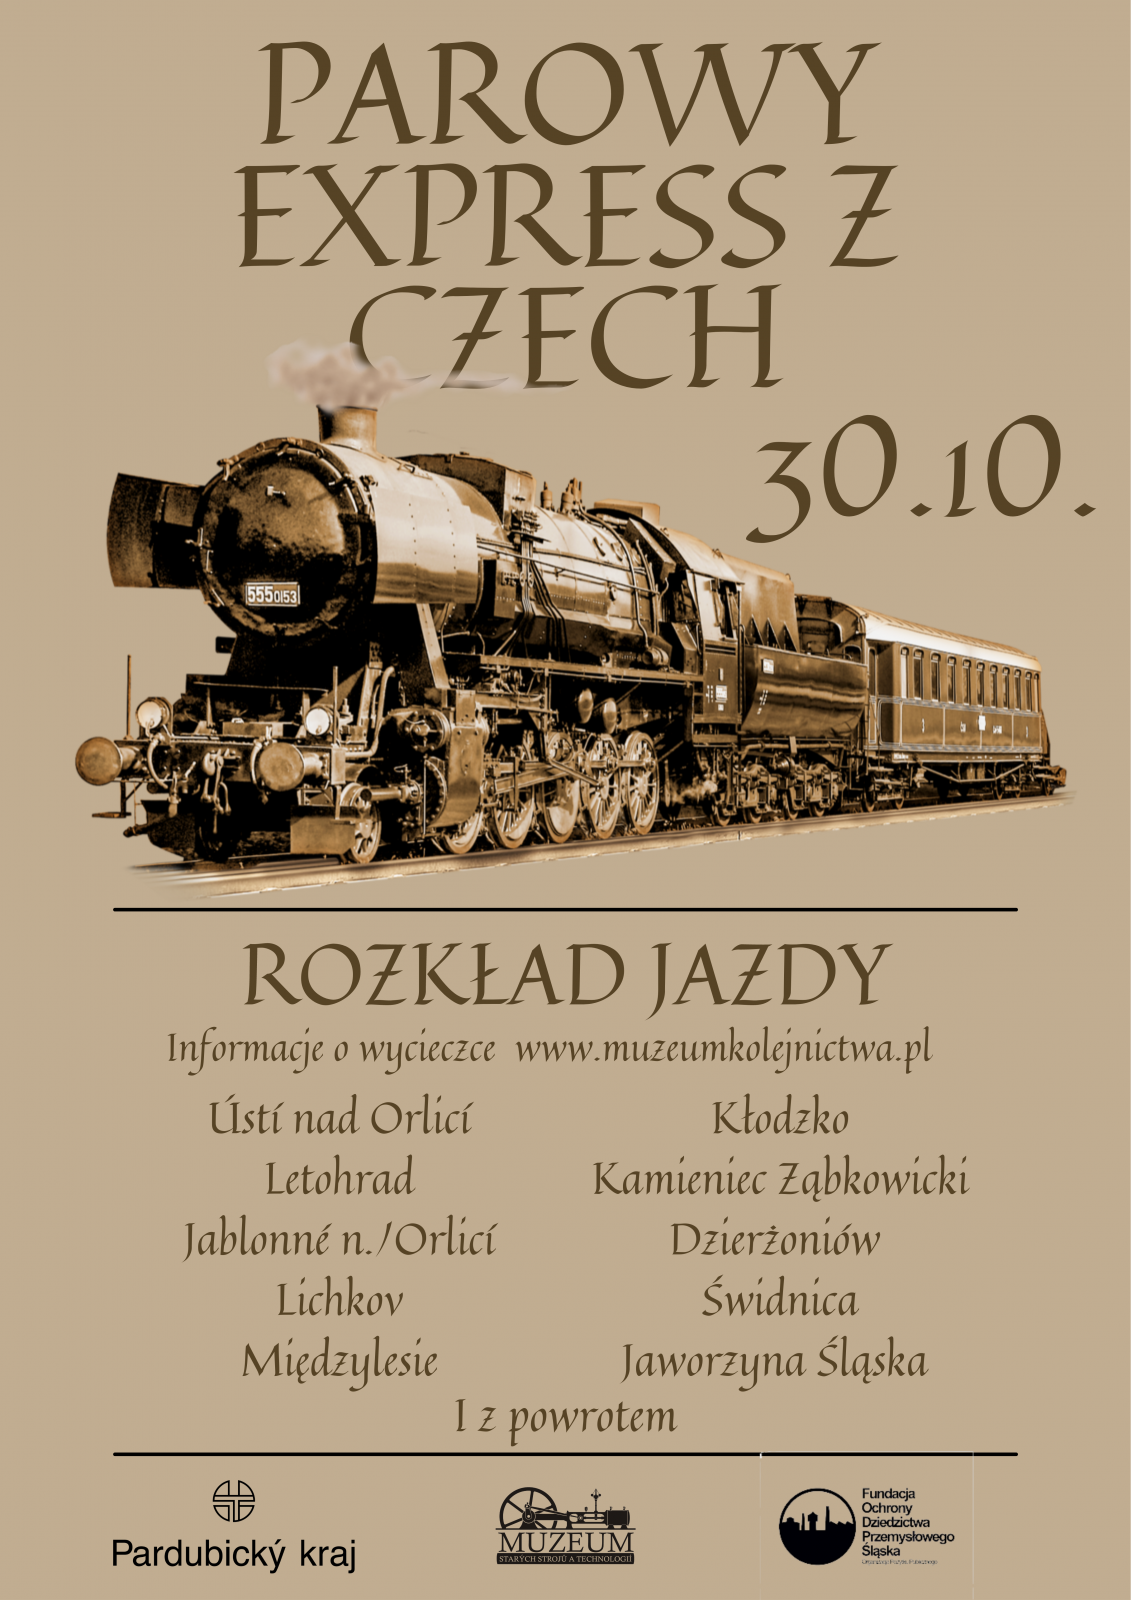 Plakt ze zdjęciem lokomotywy i informacjami zawartymi w tekście 